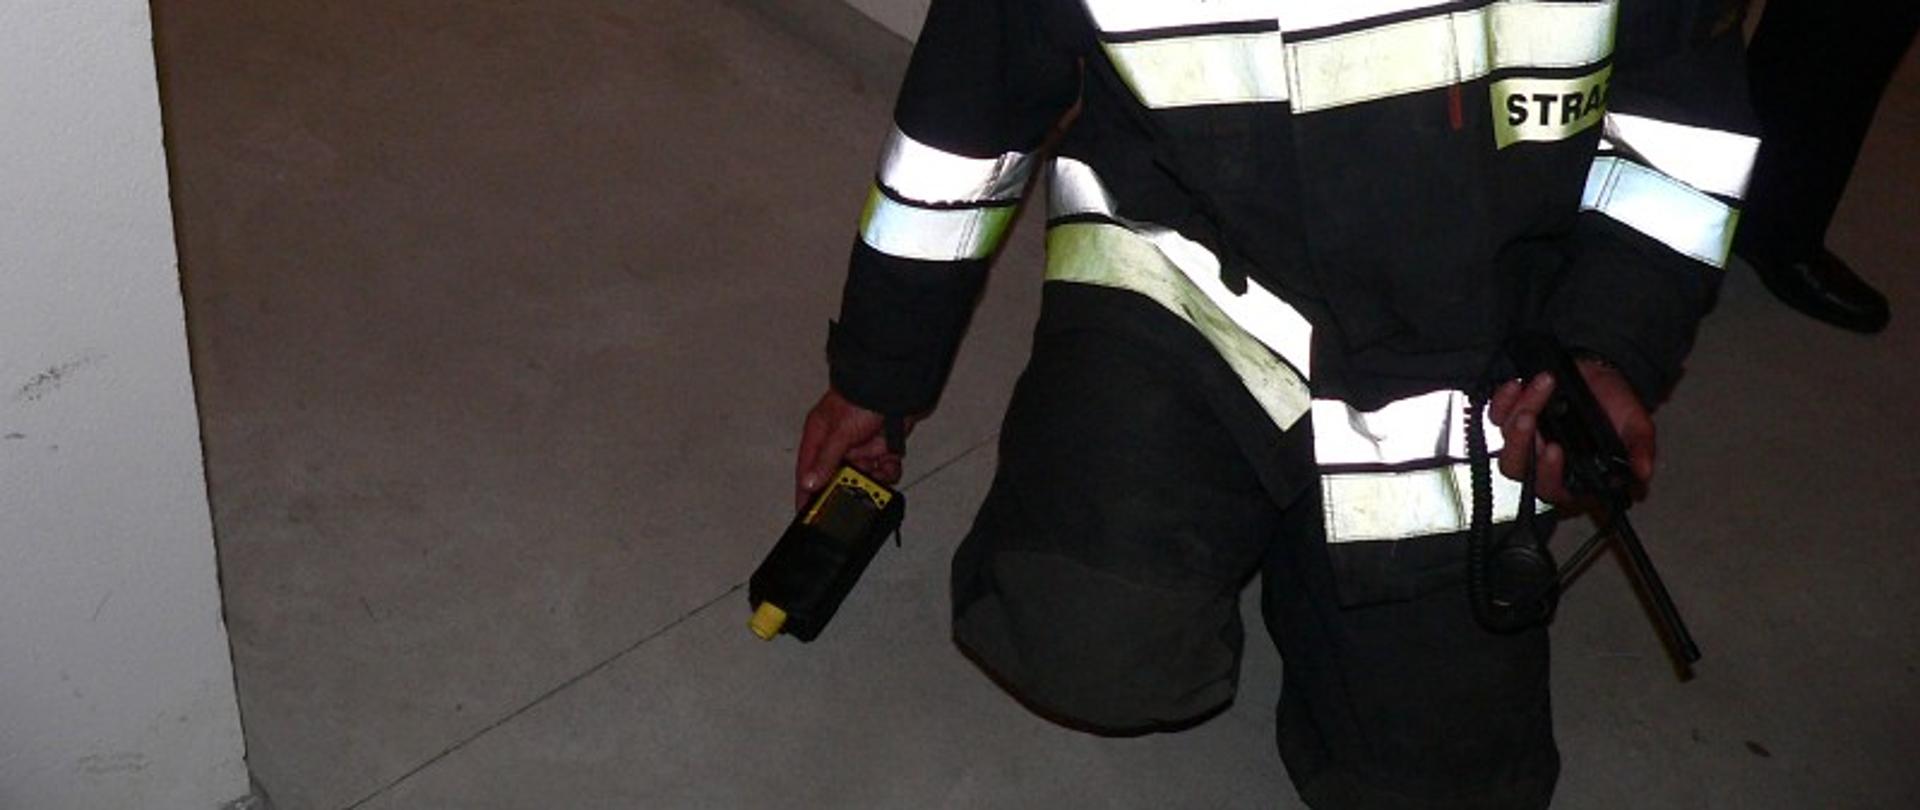 Strażak klęczy na podłodze z urządzeniem pomiarowym w budynku mieszkalnym.